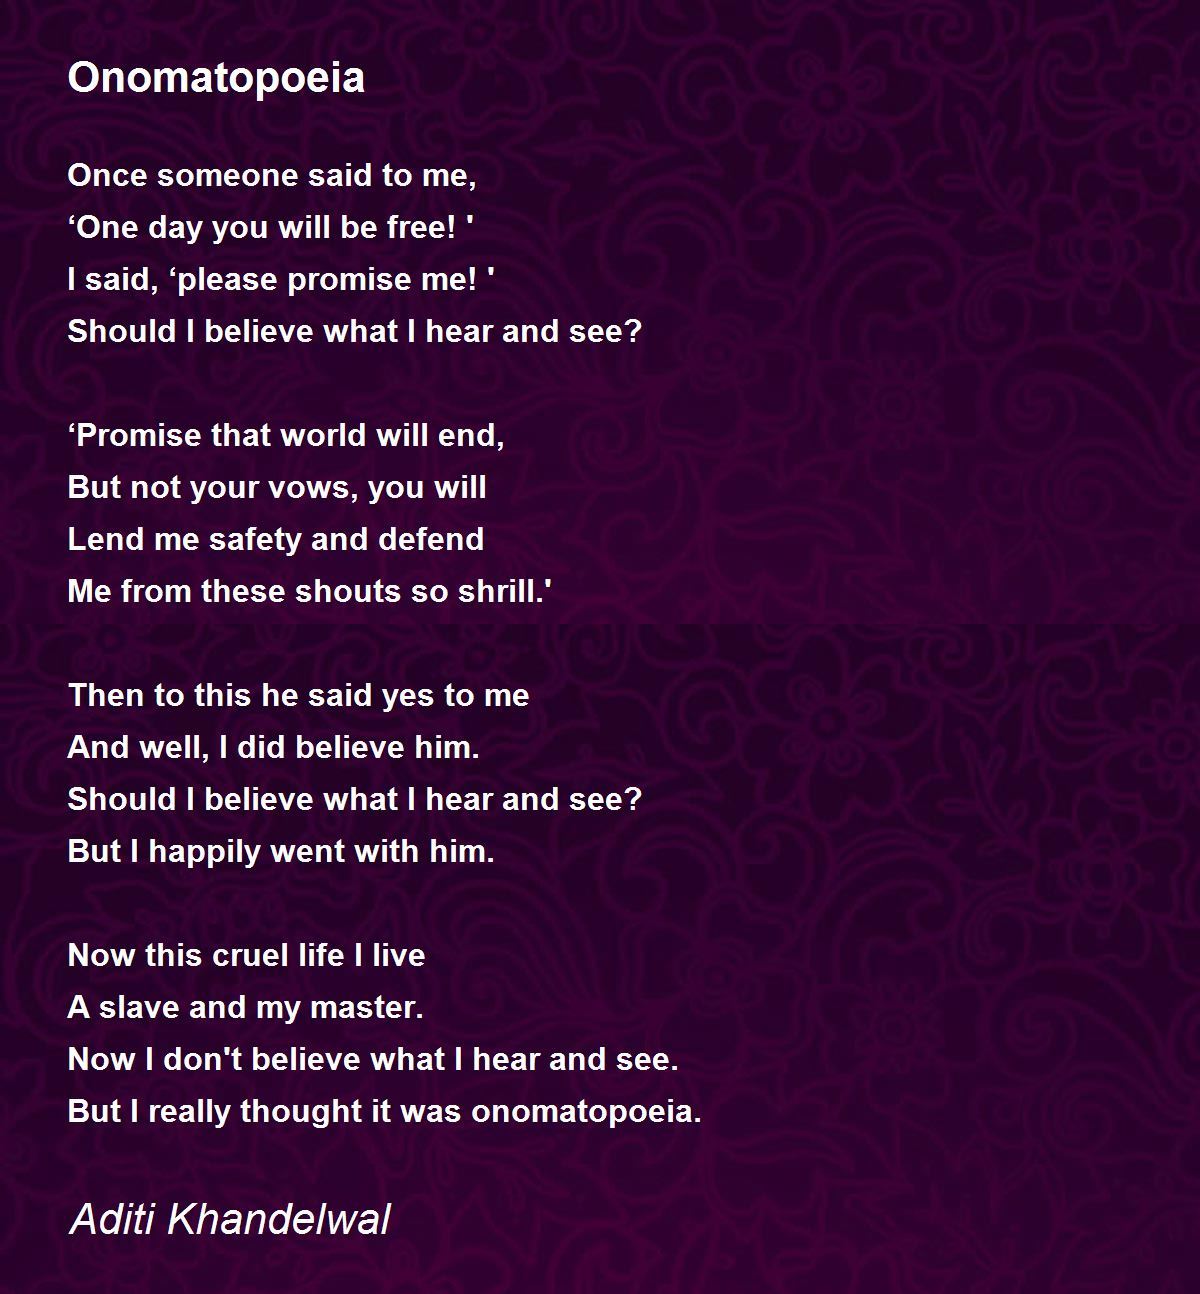 onomatopoeia poems shel silverstein